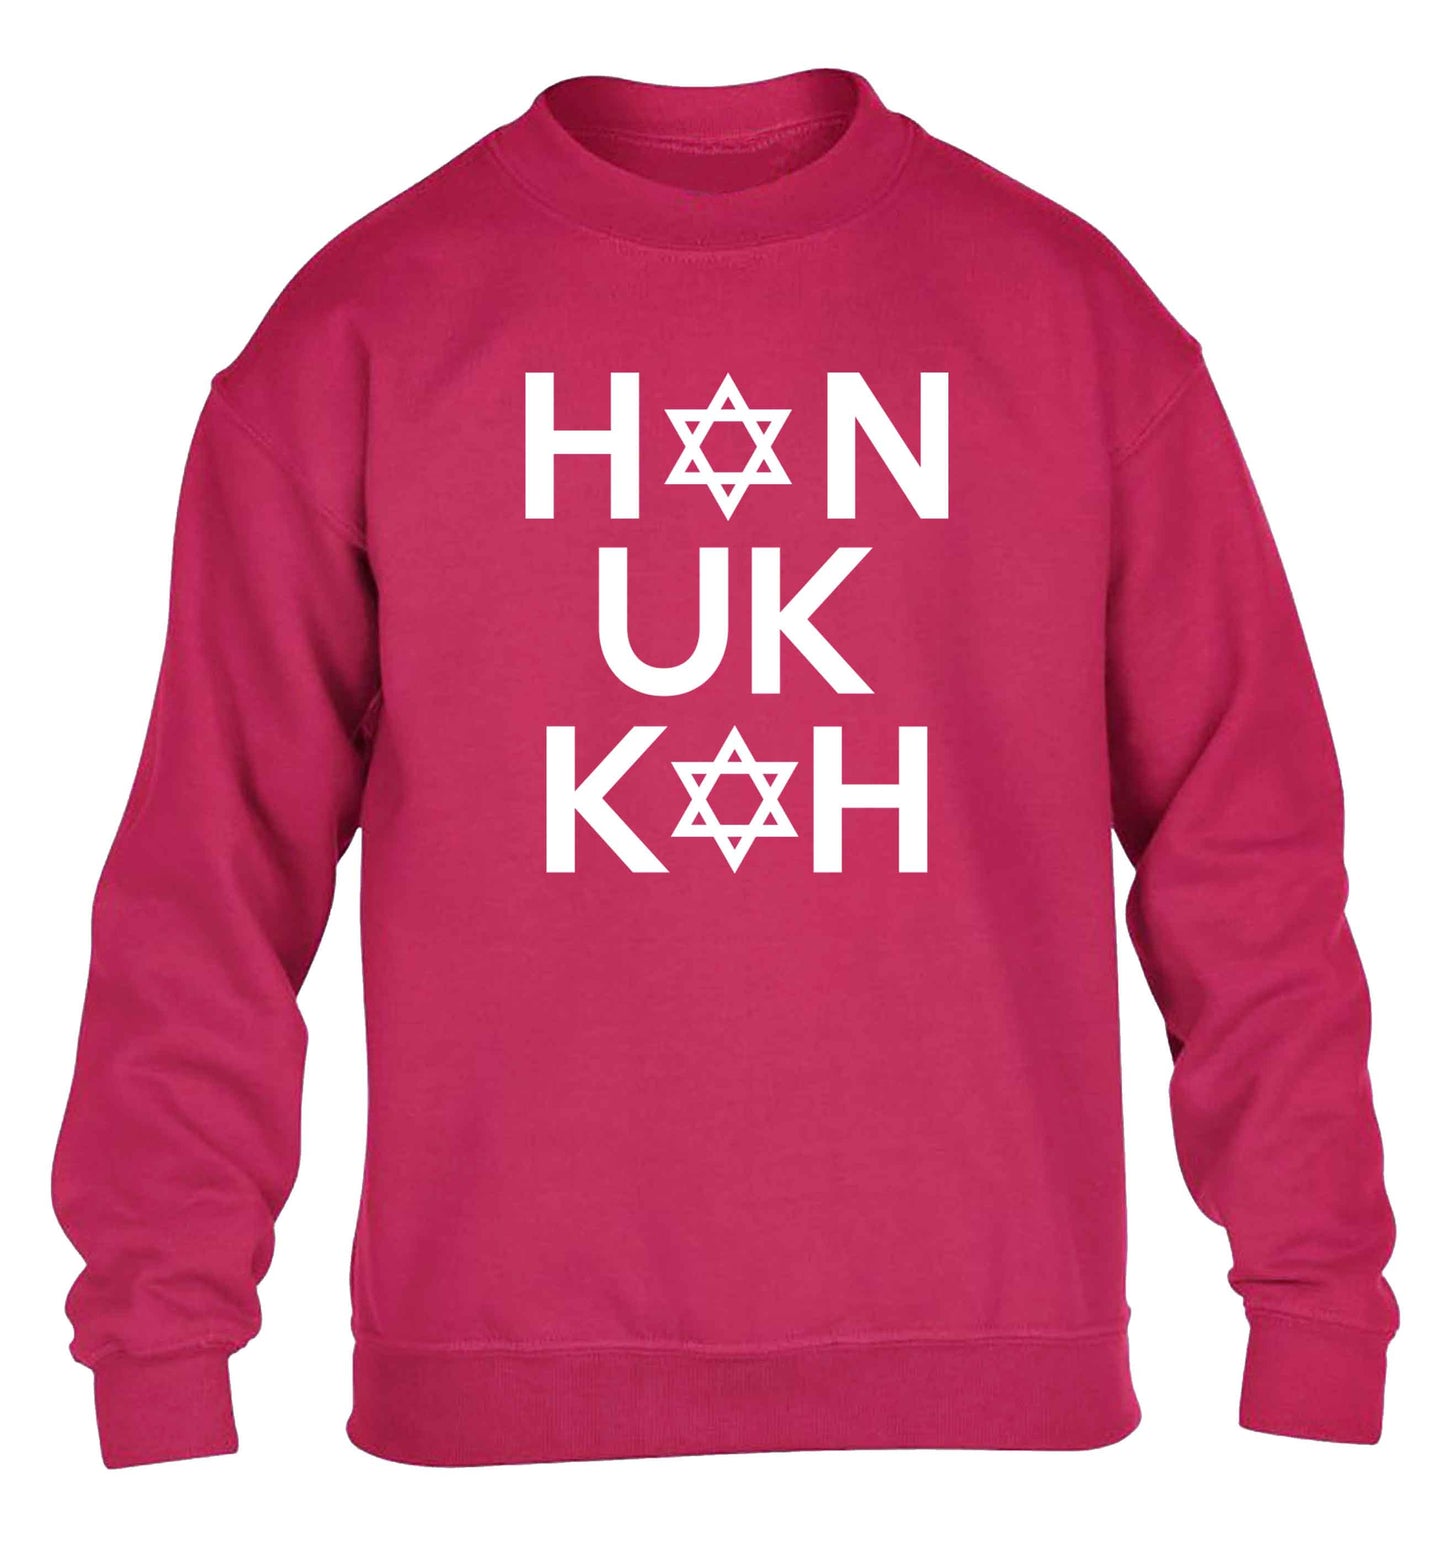 Han uk kah  Hanukkah star of david children's pink sweater 12-13 Years